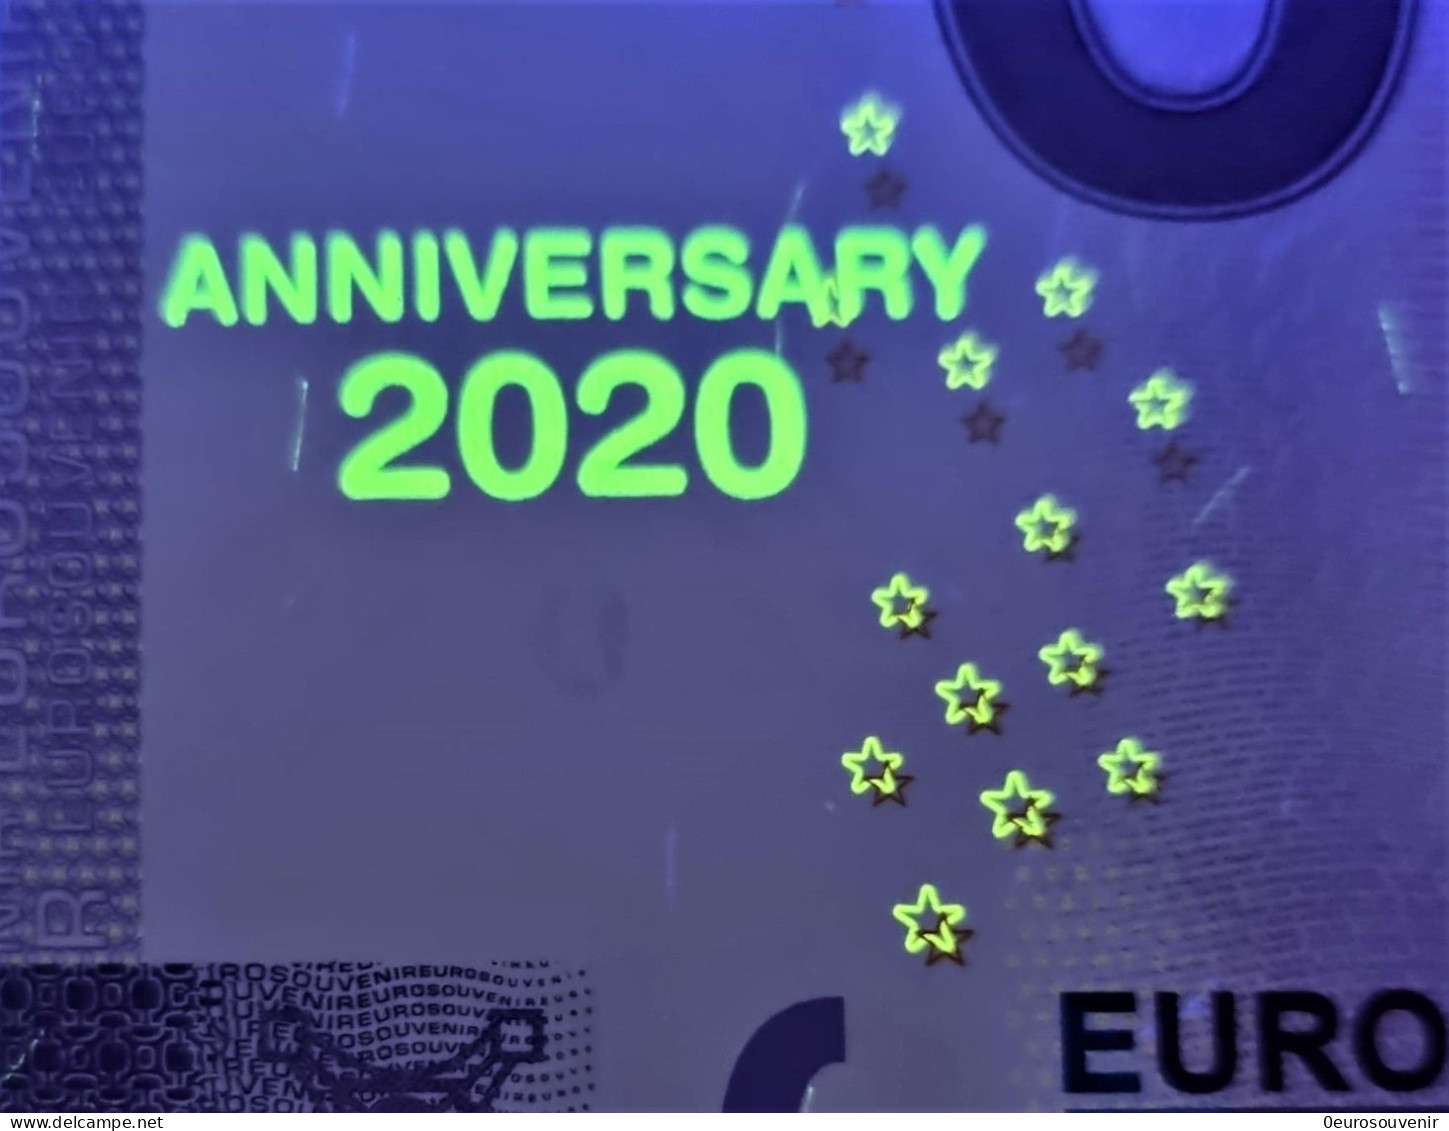 0-Euro XEGH 2020-2 HANSESTADT HATTINGEN / RUHR ALTES RATHAUS Set NORMAL+ANNIVERSARY - Pruebas Privadas